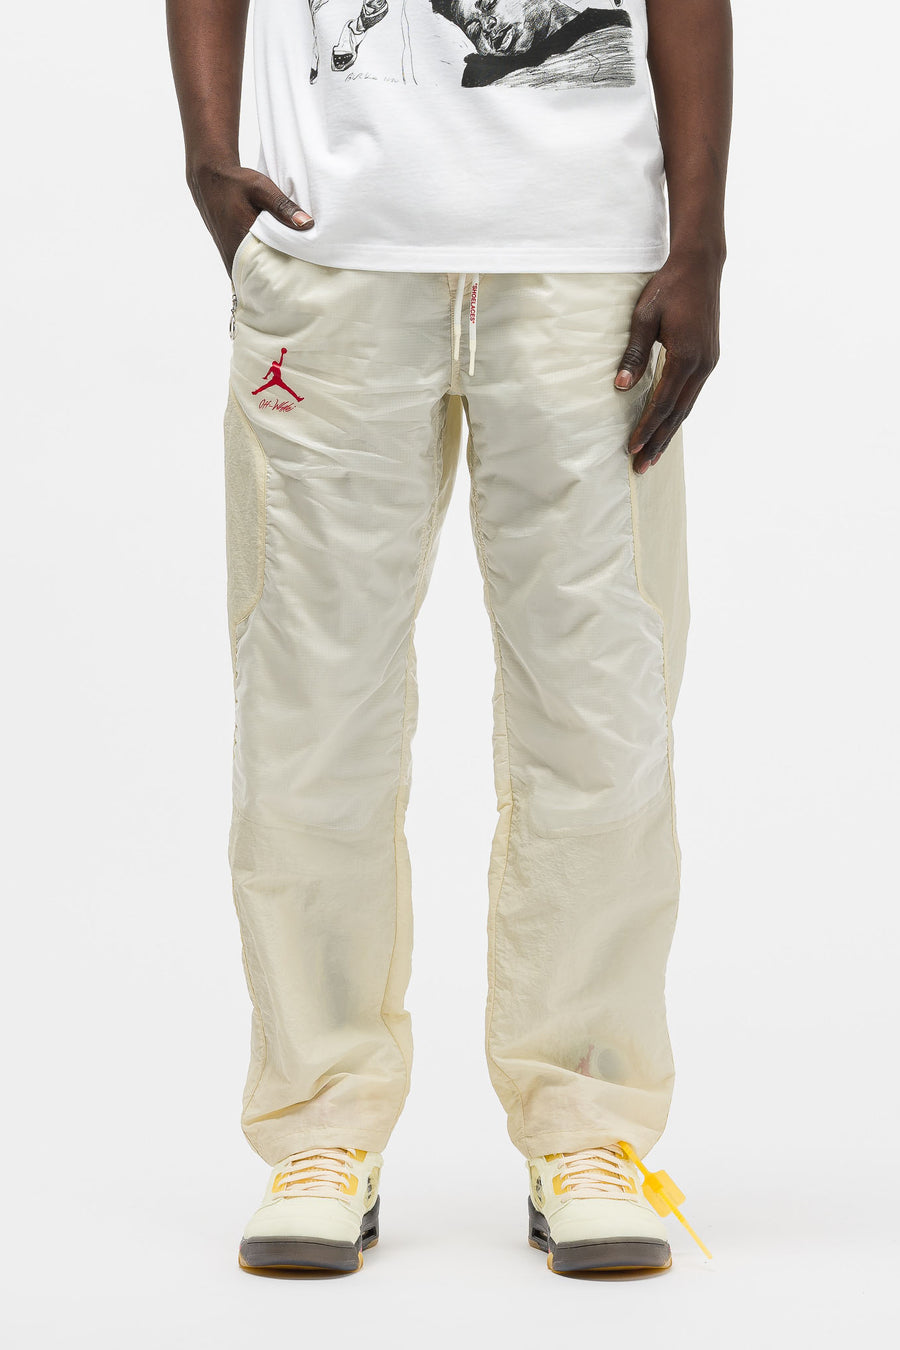 jordan x off white pants